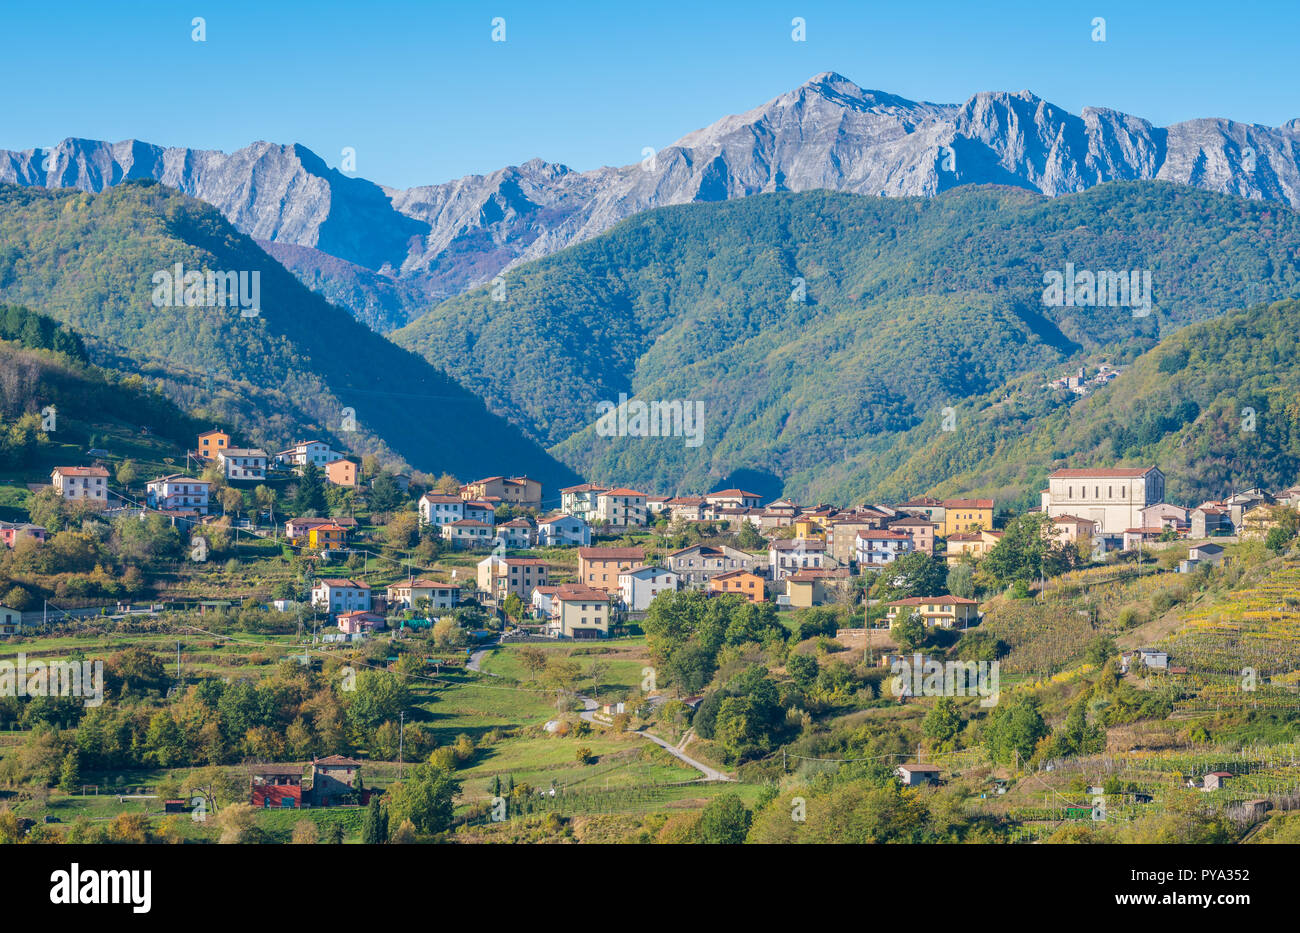 Paysage idyllique avec le village de Poggio et les Alpes Apuanes en arrière-plan. Province de Lucca, Toscane, Italie centrale. Banque D'Images